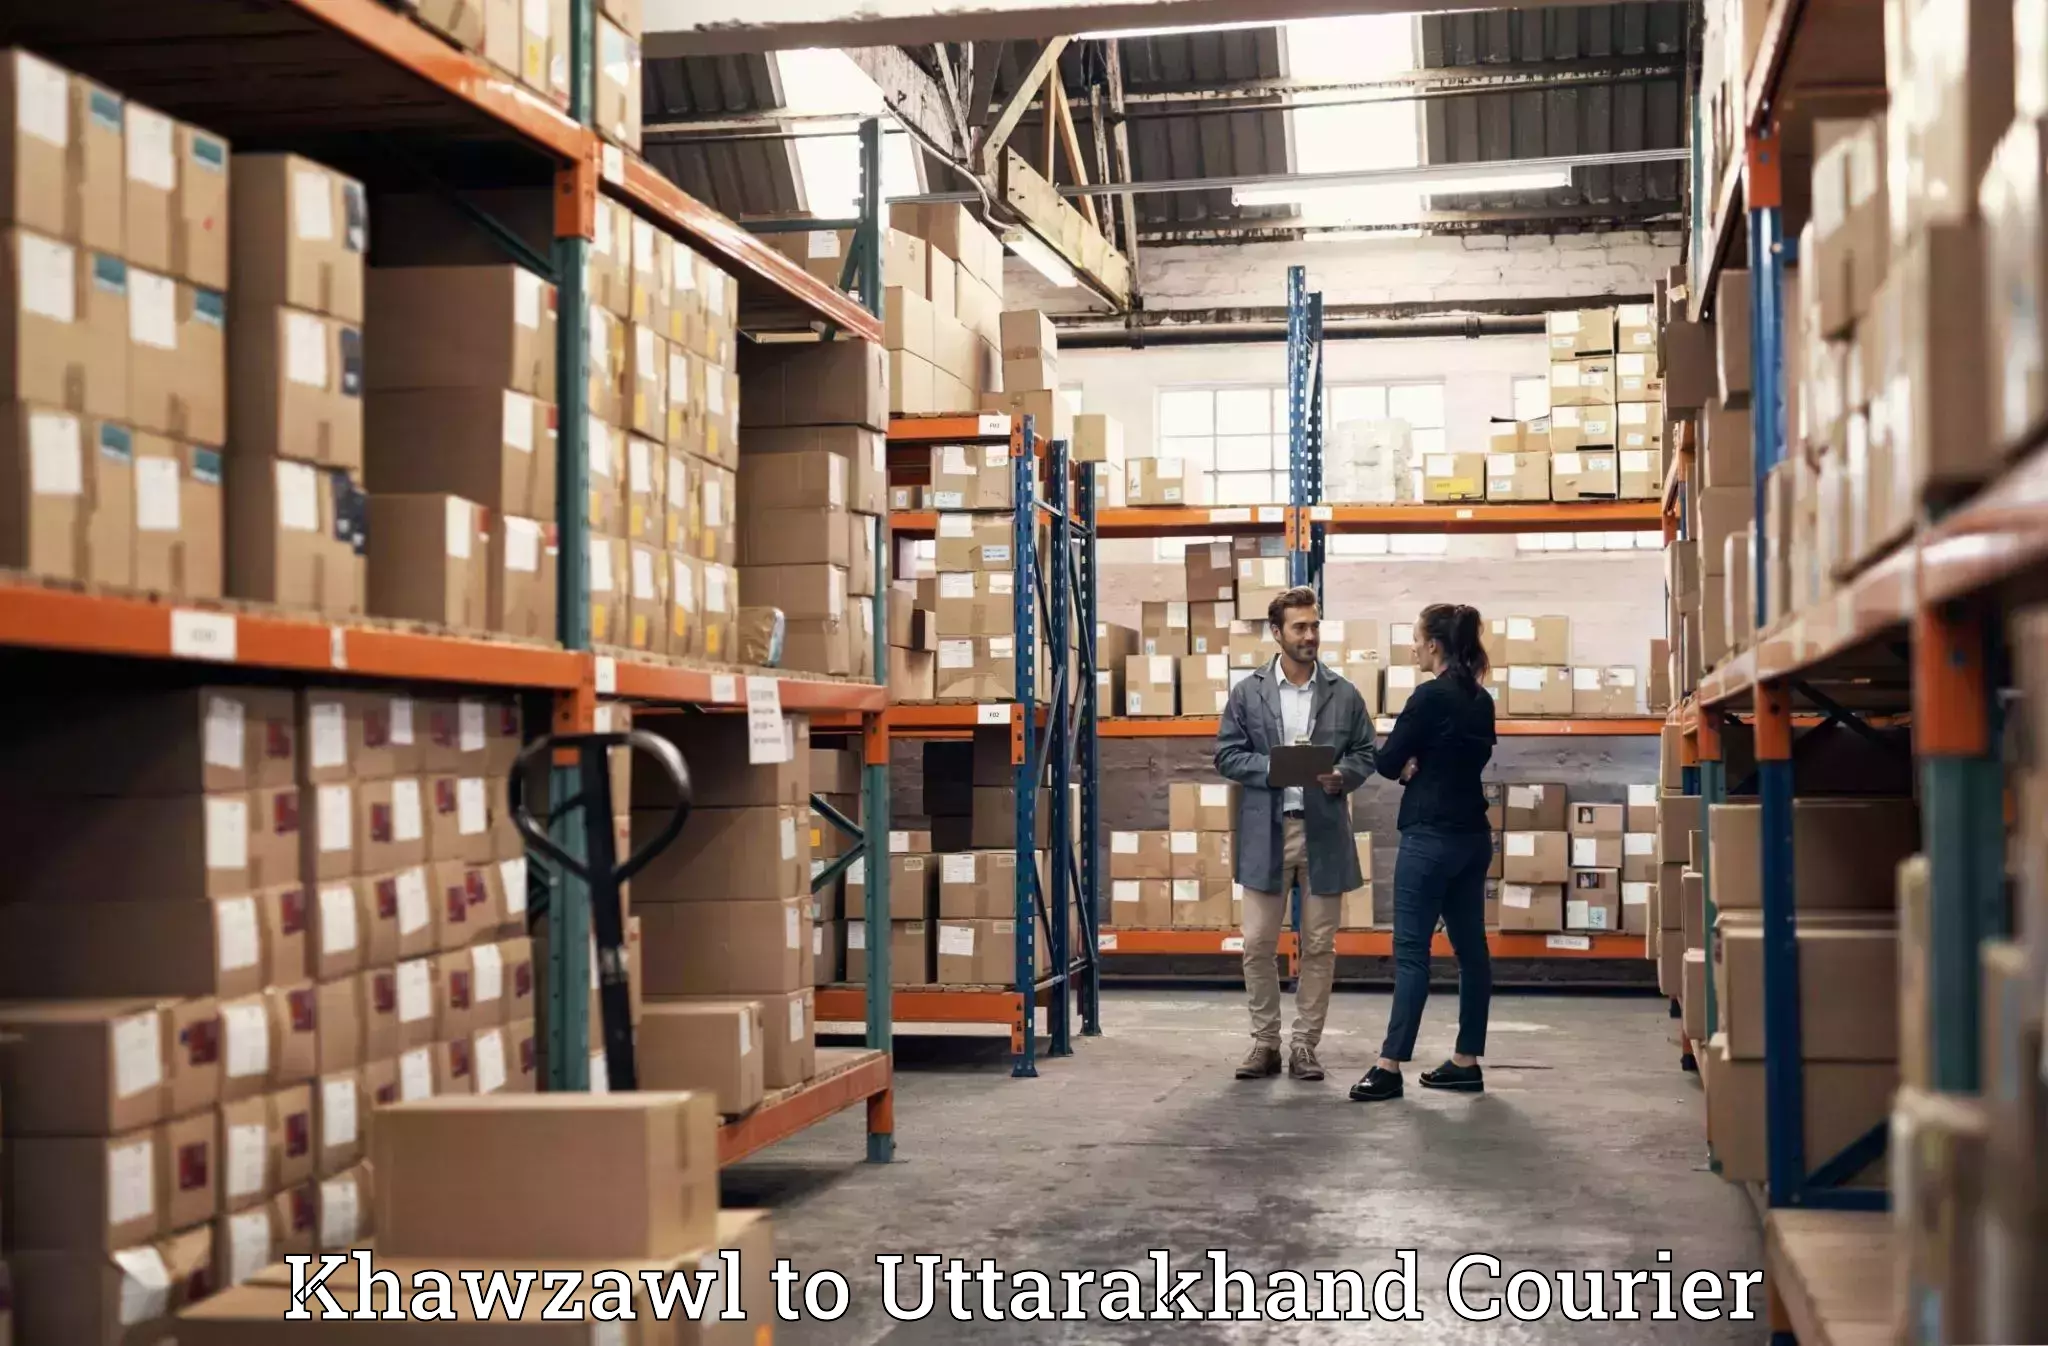 Furniture delivery service Khawzawl to Uttarkashi